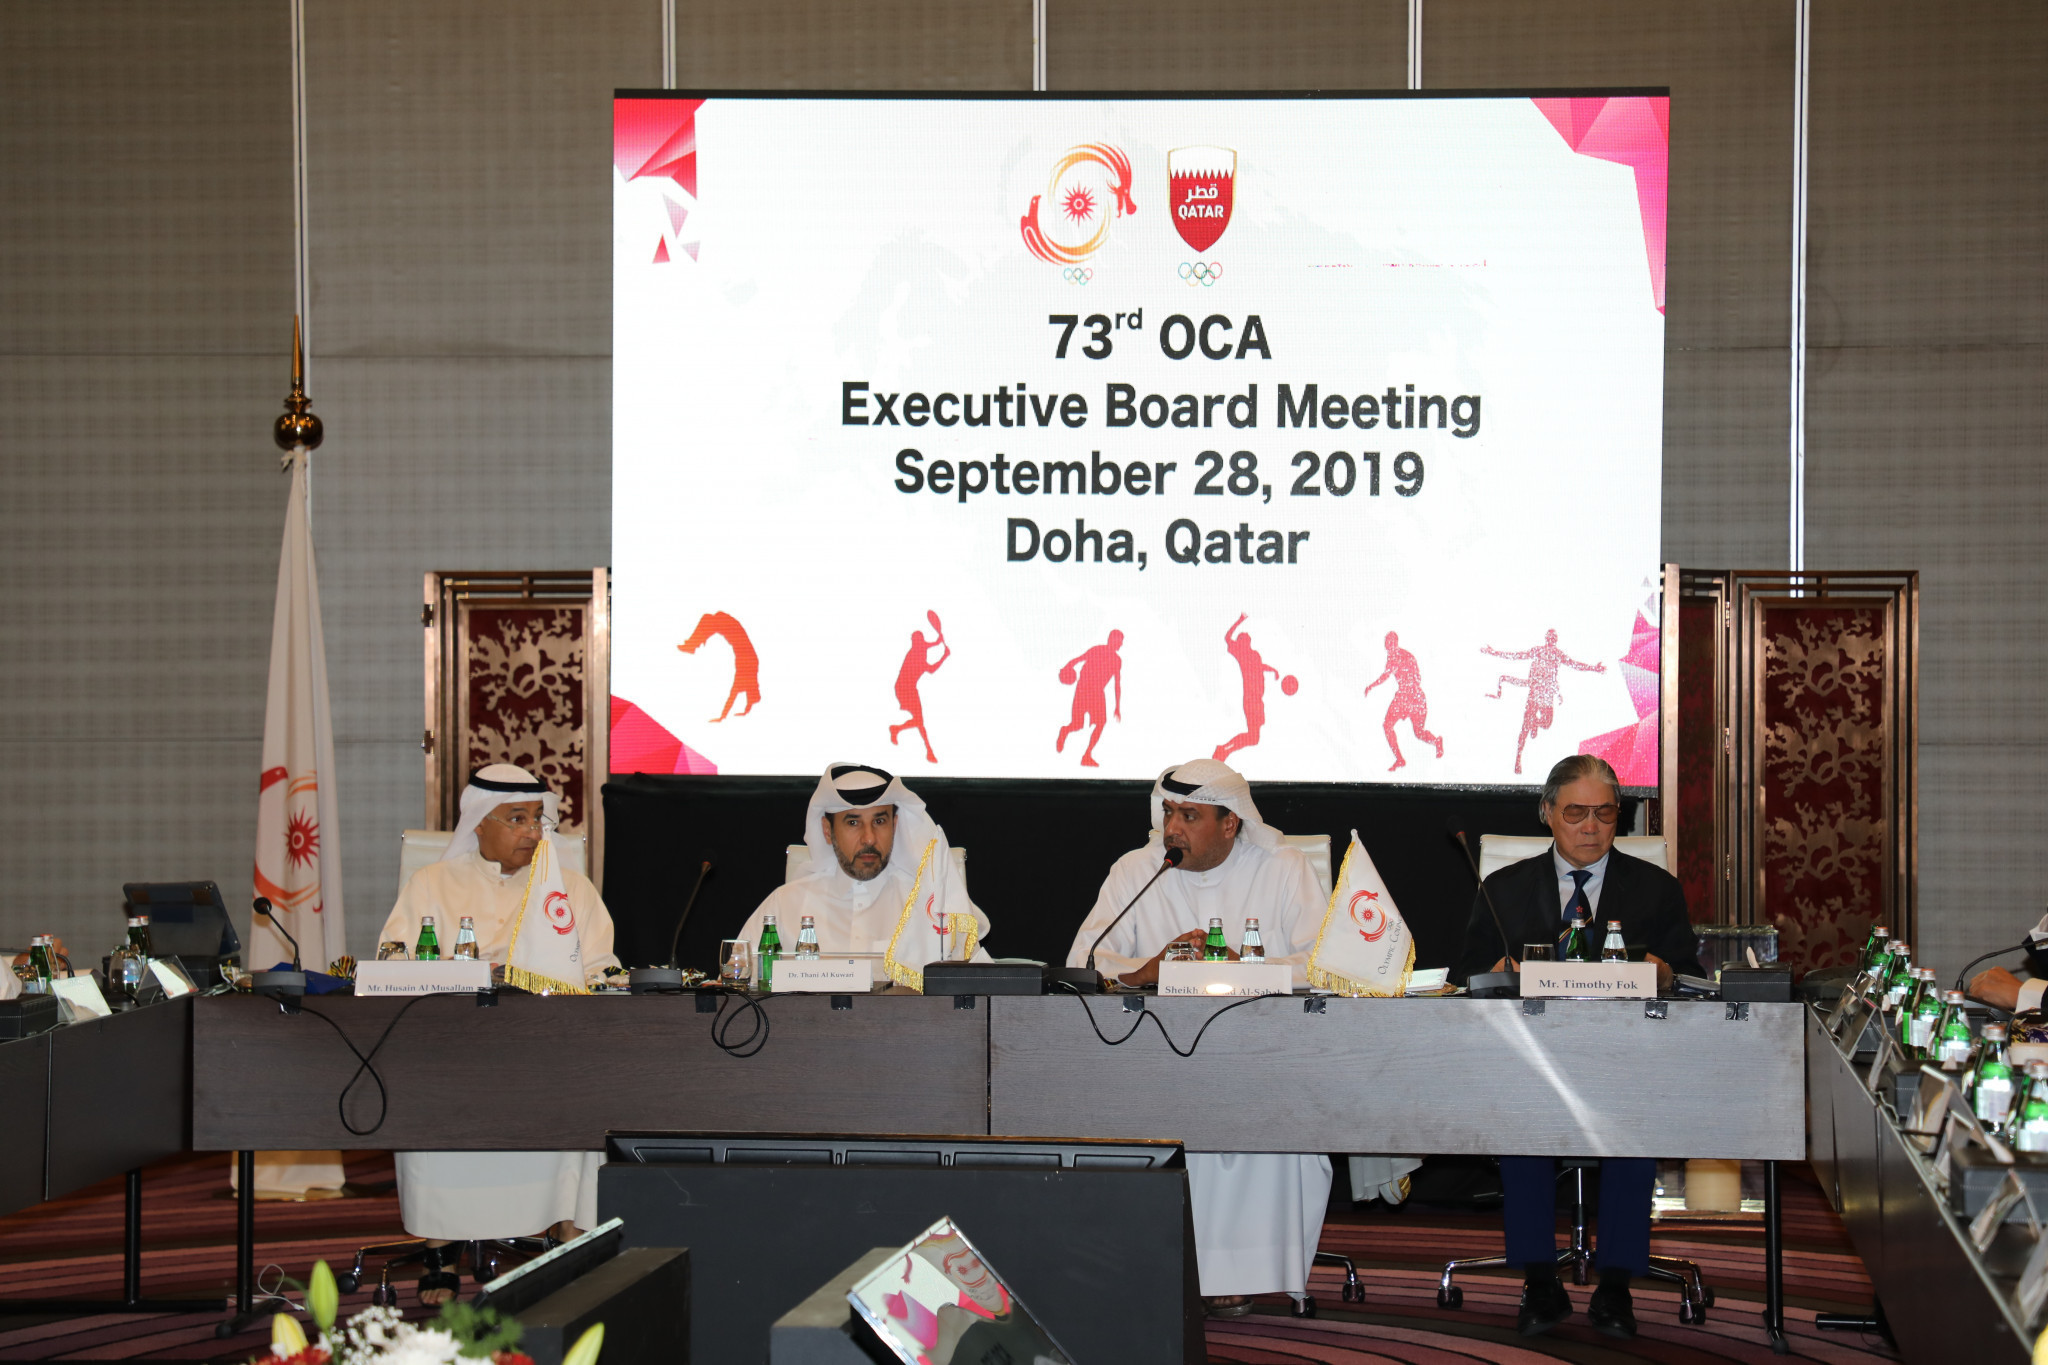 The OCA awarded the 2025 Asian Youth Games to Tashkent in 2019 ©OCA